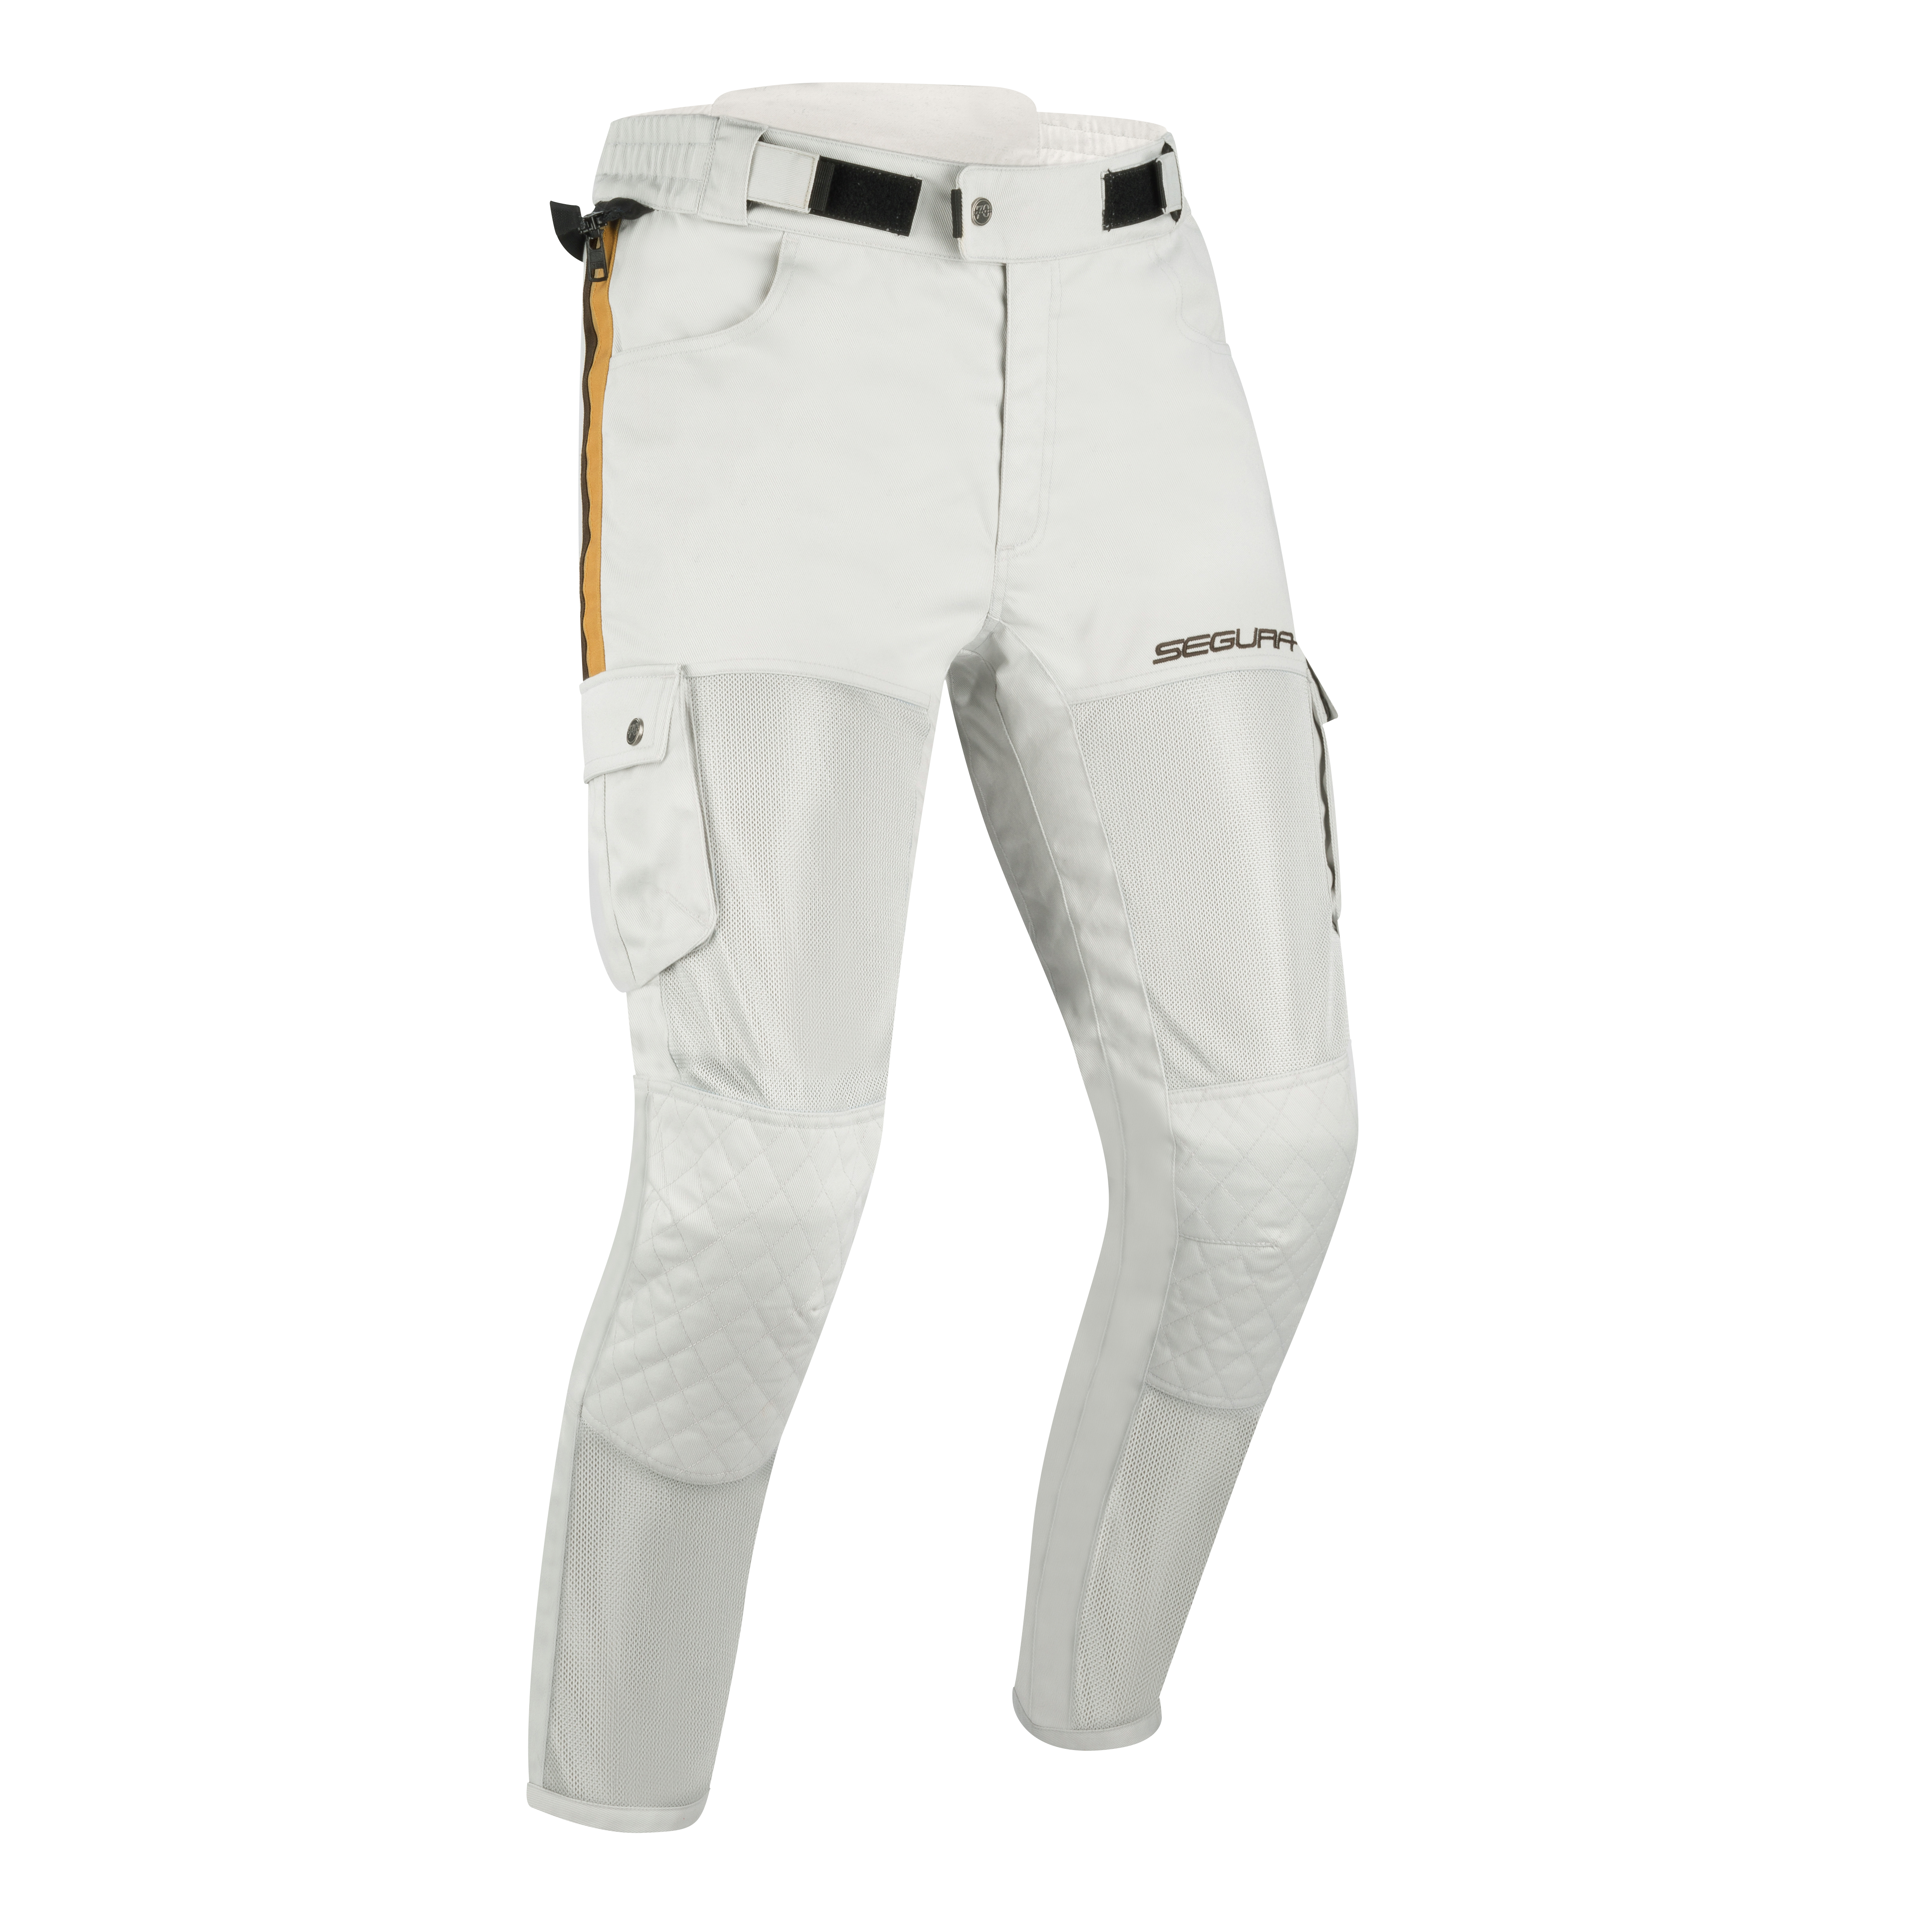 STP283_SEGURA-MOJO-PANT Pantalon Mojo Segura, couleur Blanc et Marron avec poche latérale Vue de face